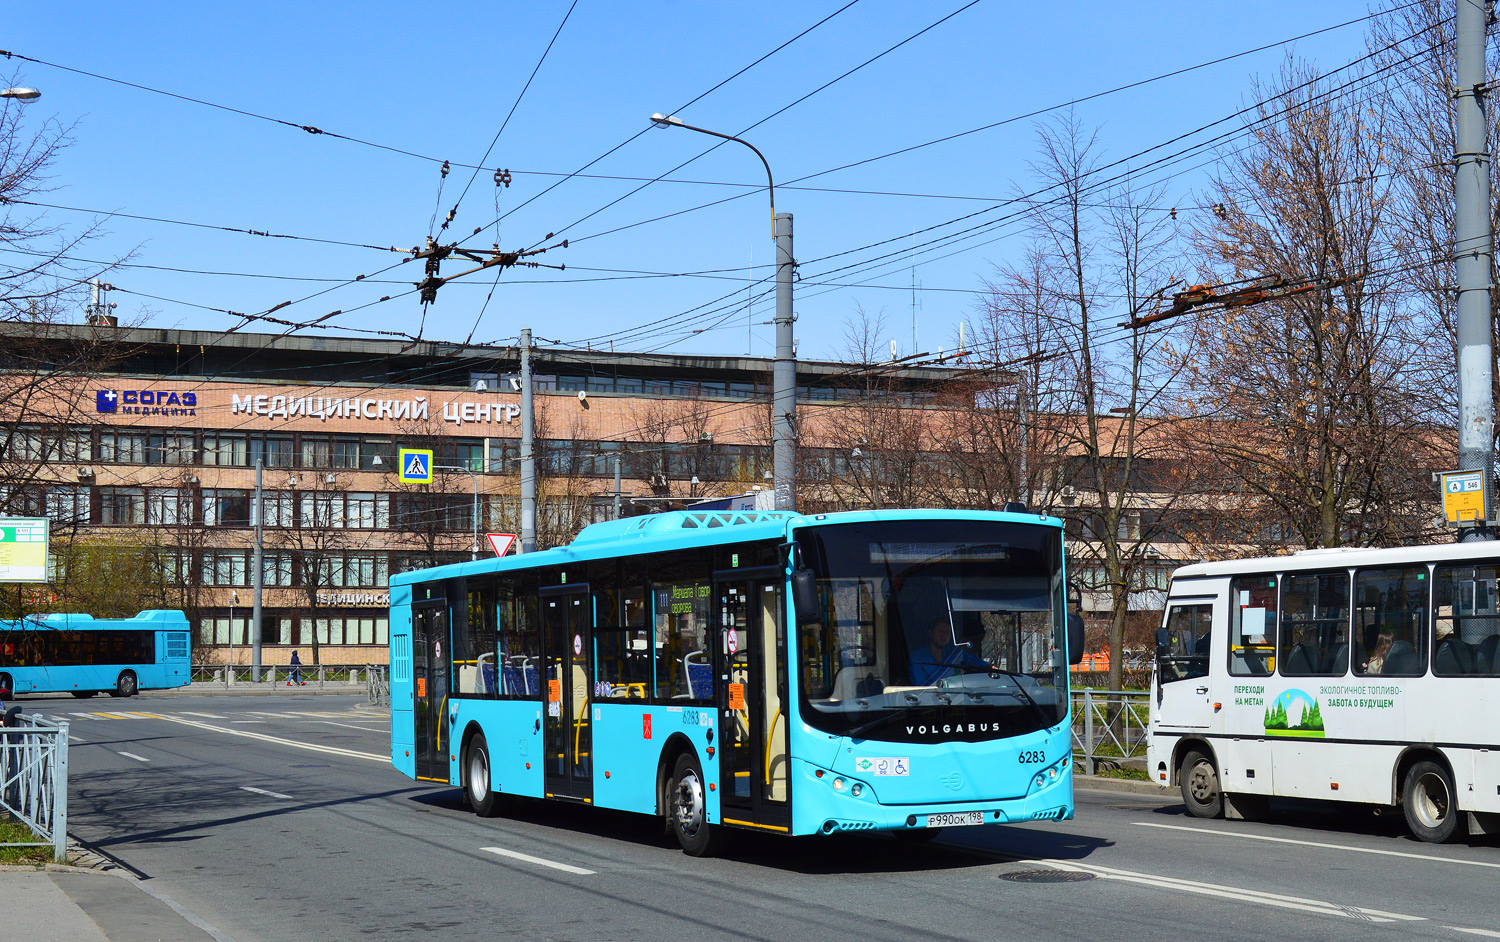 Szentpétervár, Volgabus-5270.G2 (LNG) sz.: 6283